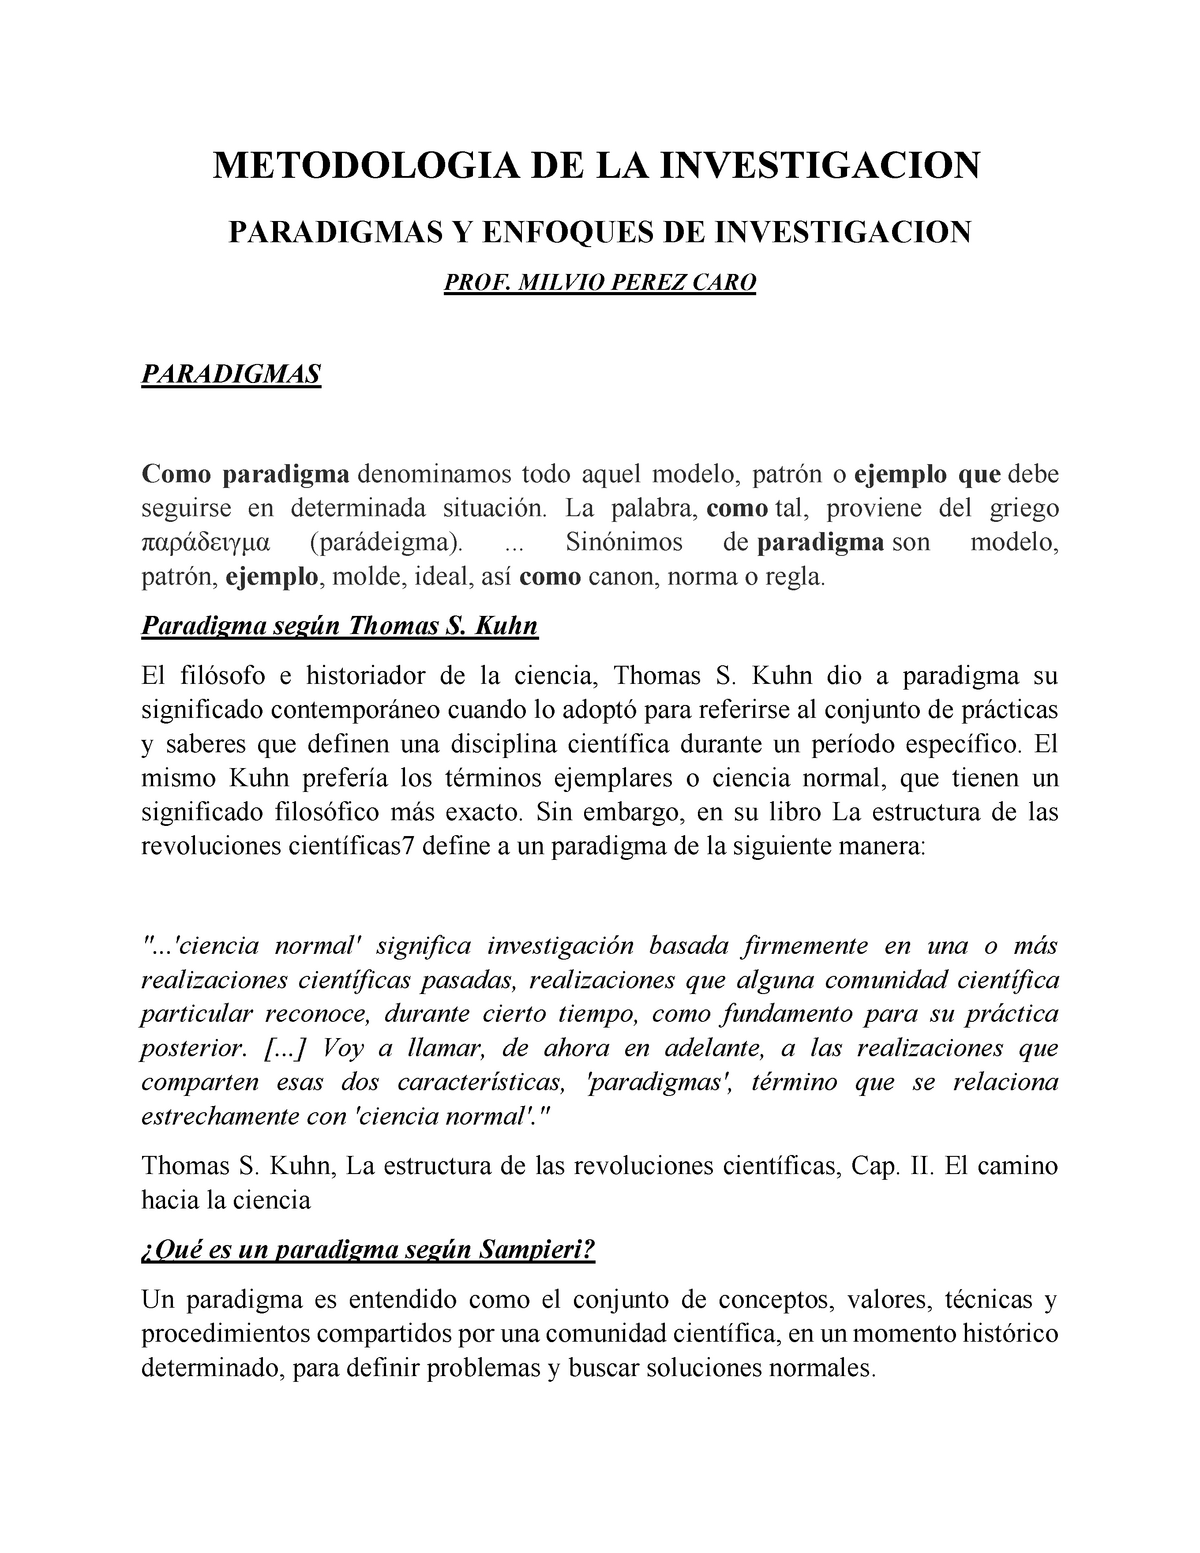 OK. Paradigmas Y Enfoques DE Investigacion - METODOLOGIA DE LA ...